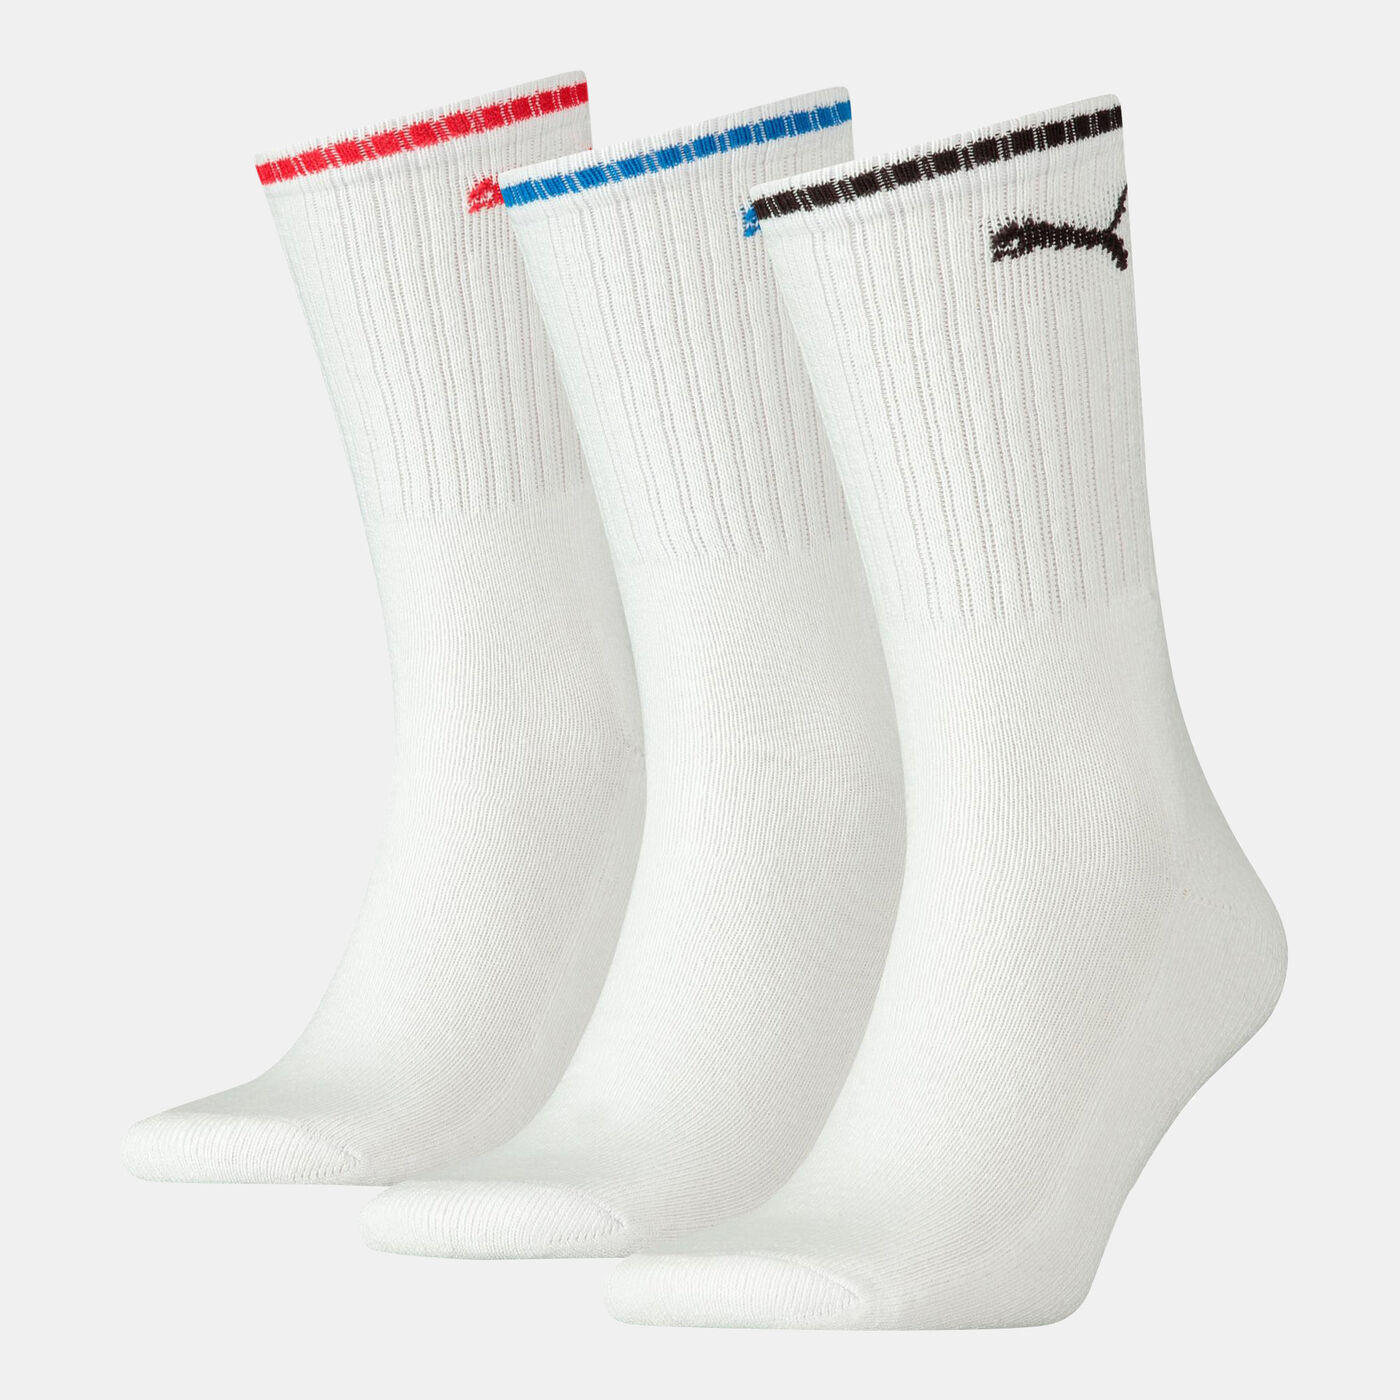 Regular Crew Striped Socks (3 Pack)